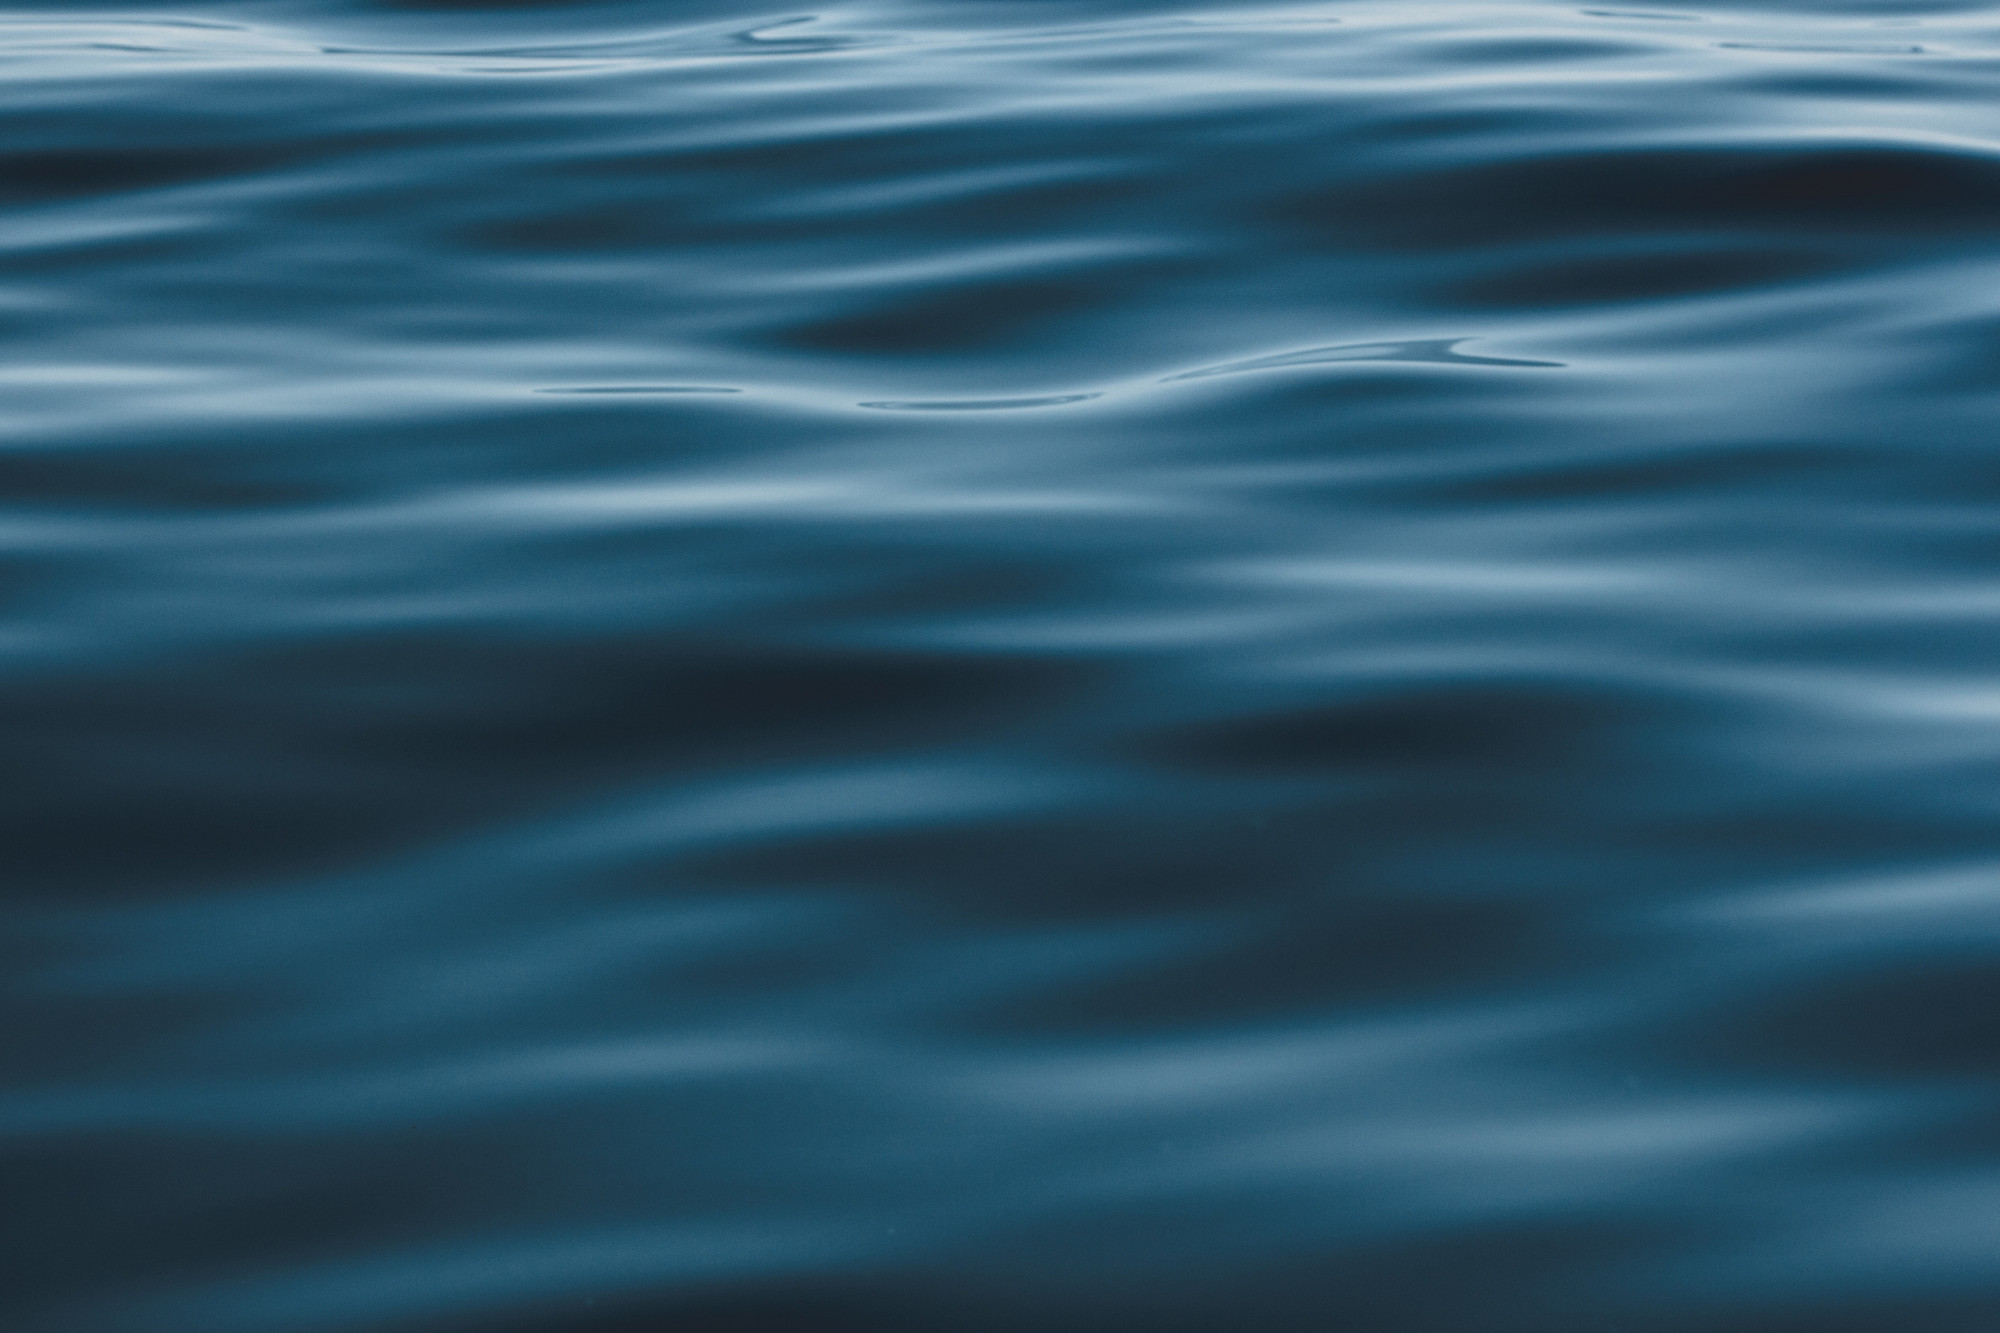 Blue ocean waves